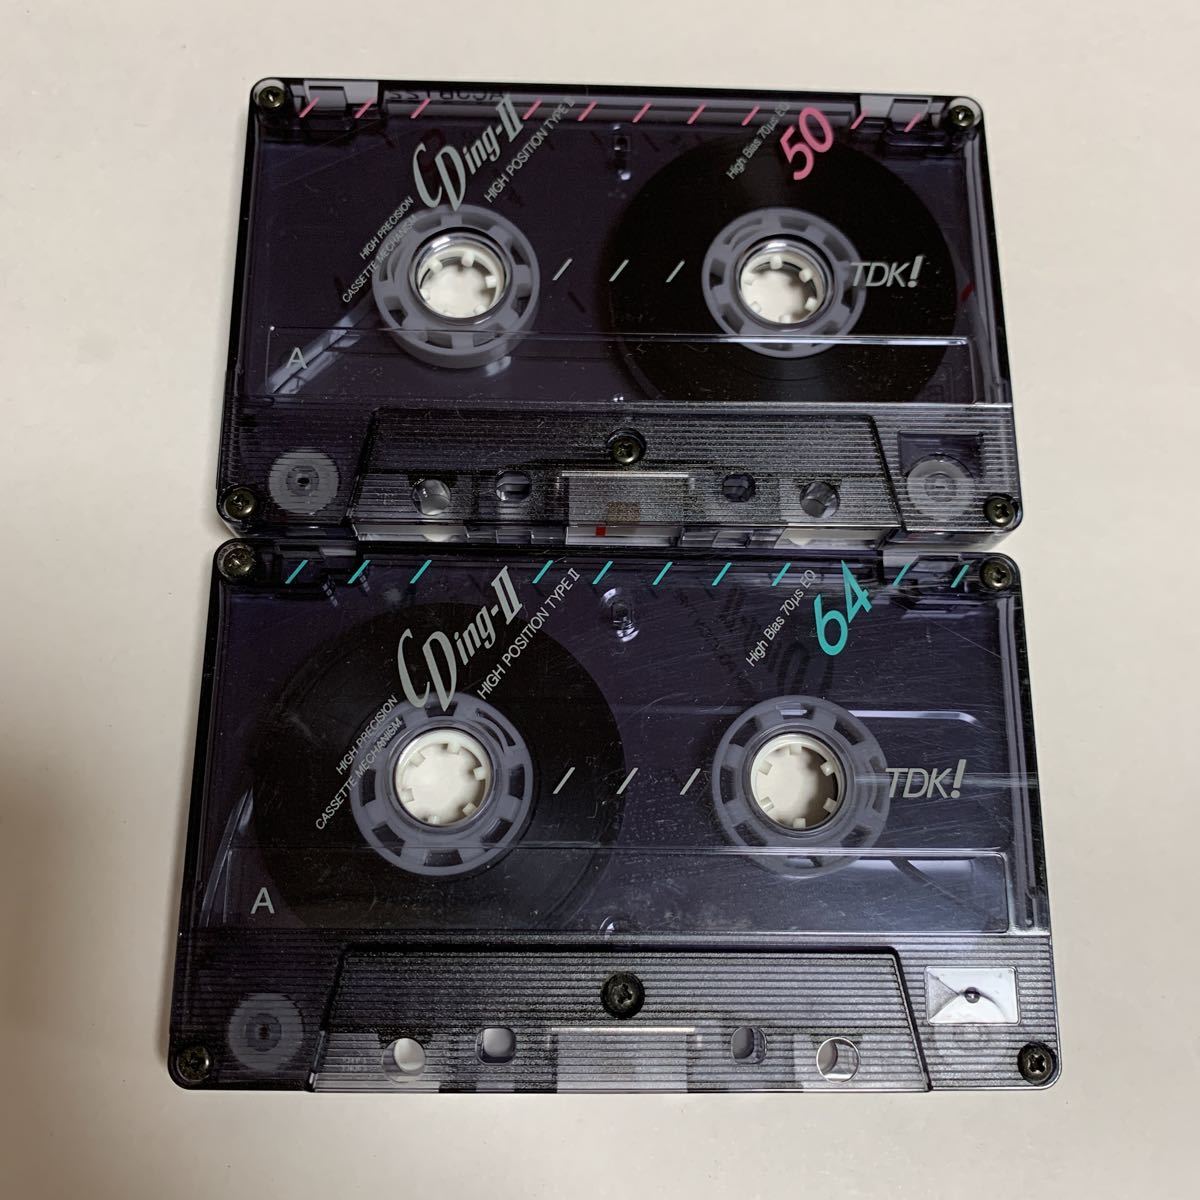 5. カセットテープ TDK CDing-II 50分 64分 2本セット ハイポジション 録音済か不明 中古品 美品 送料無料_画像1